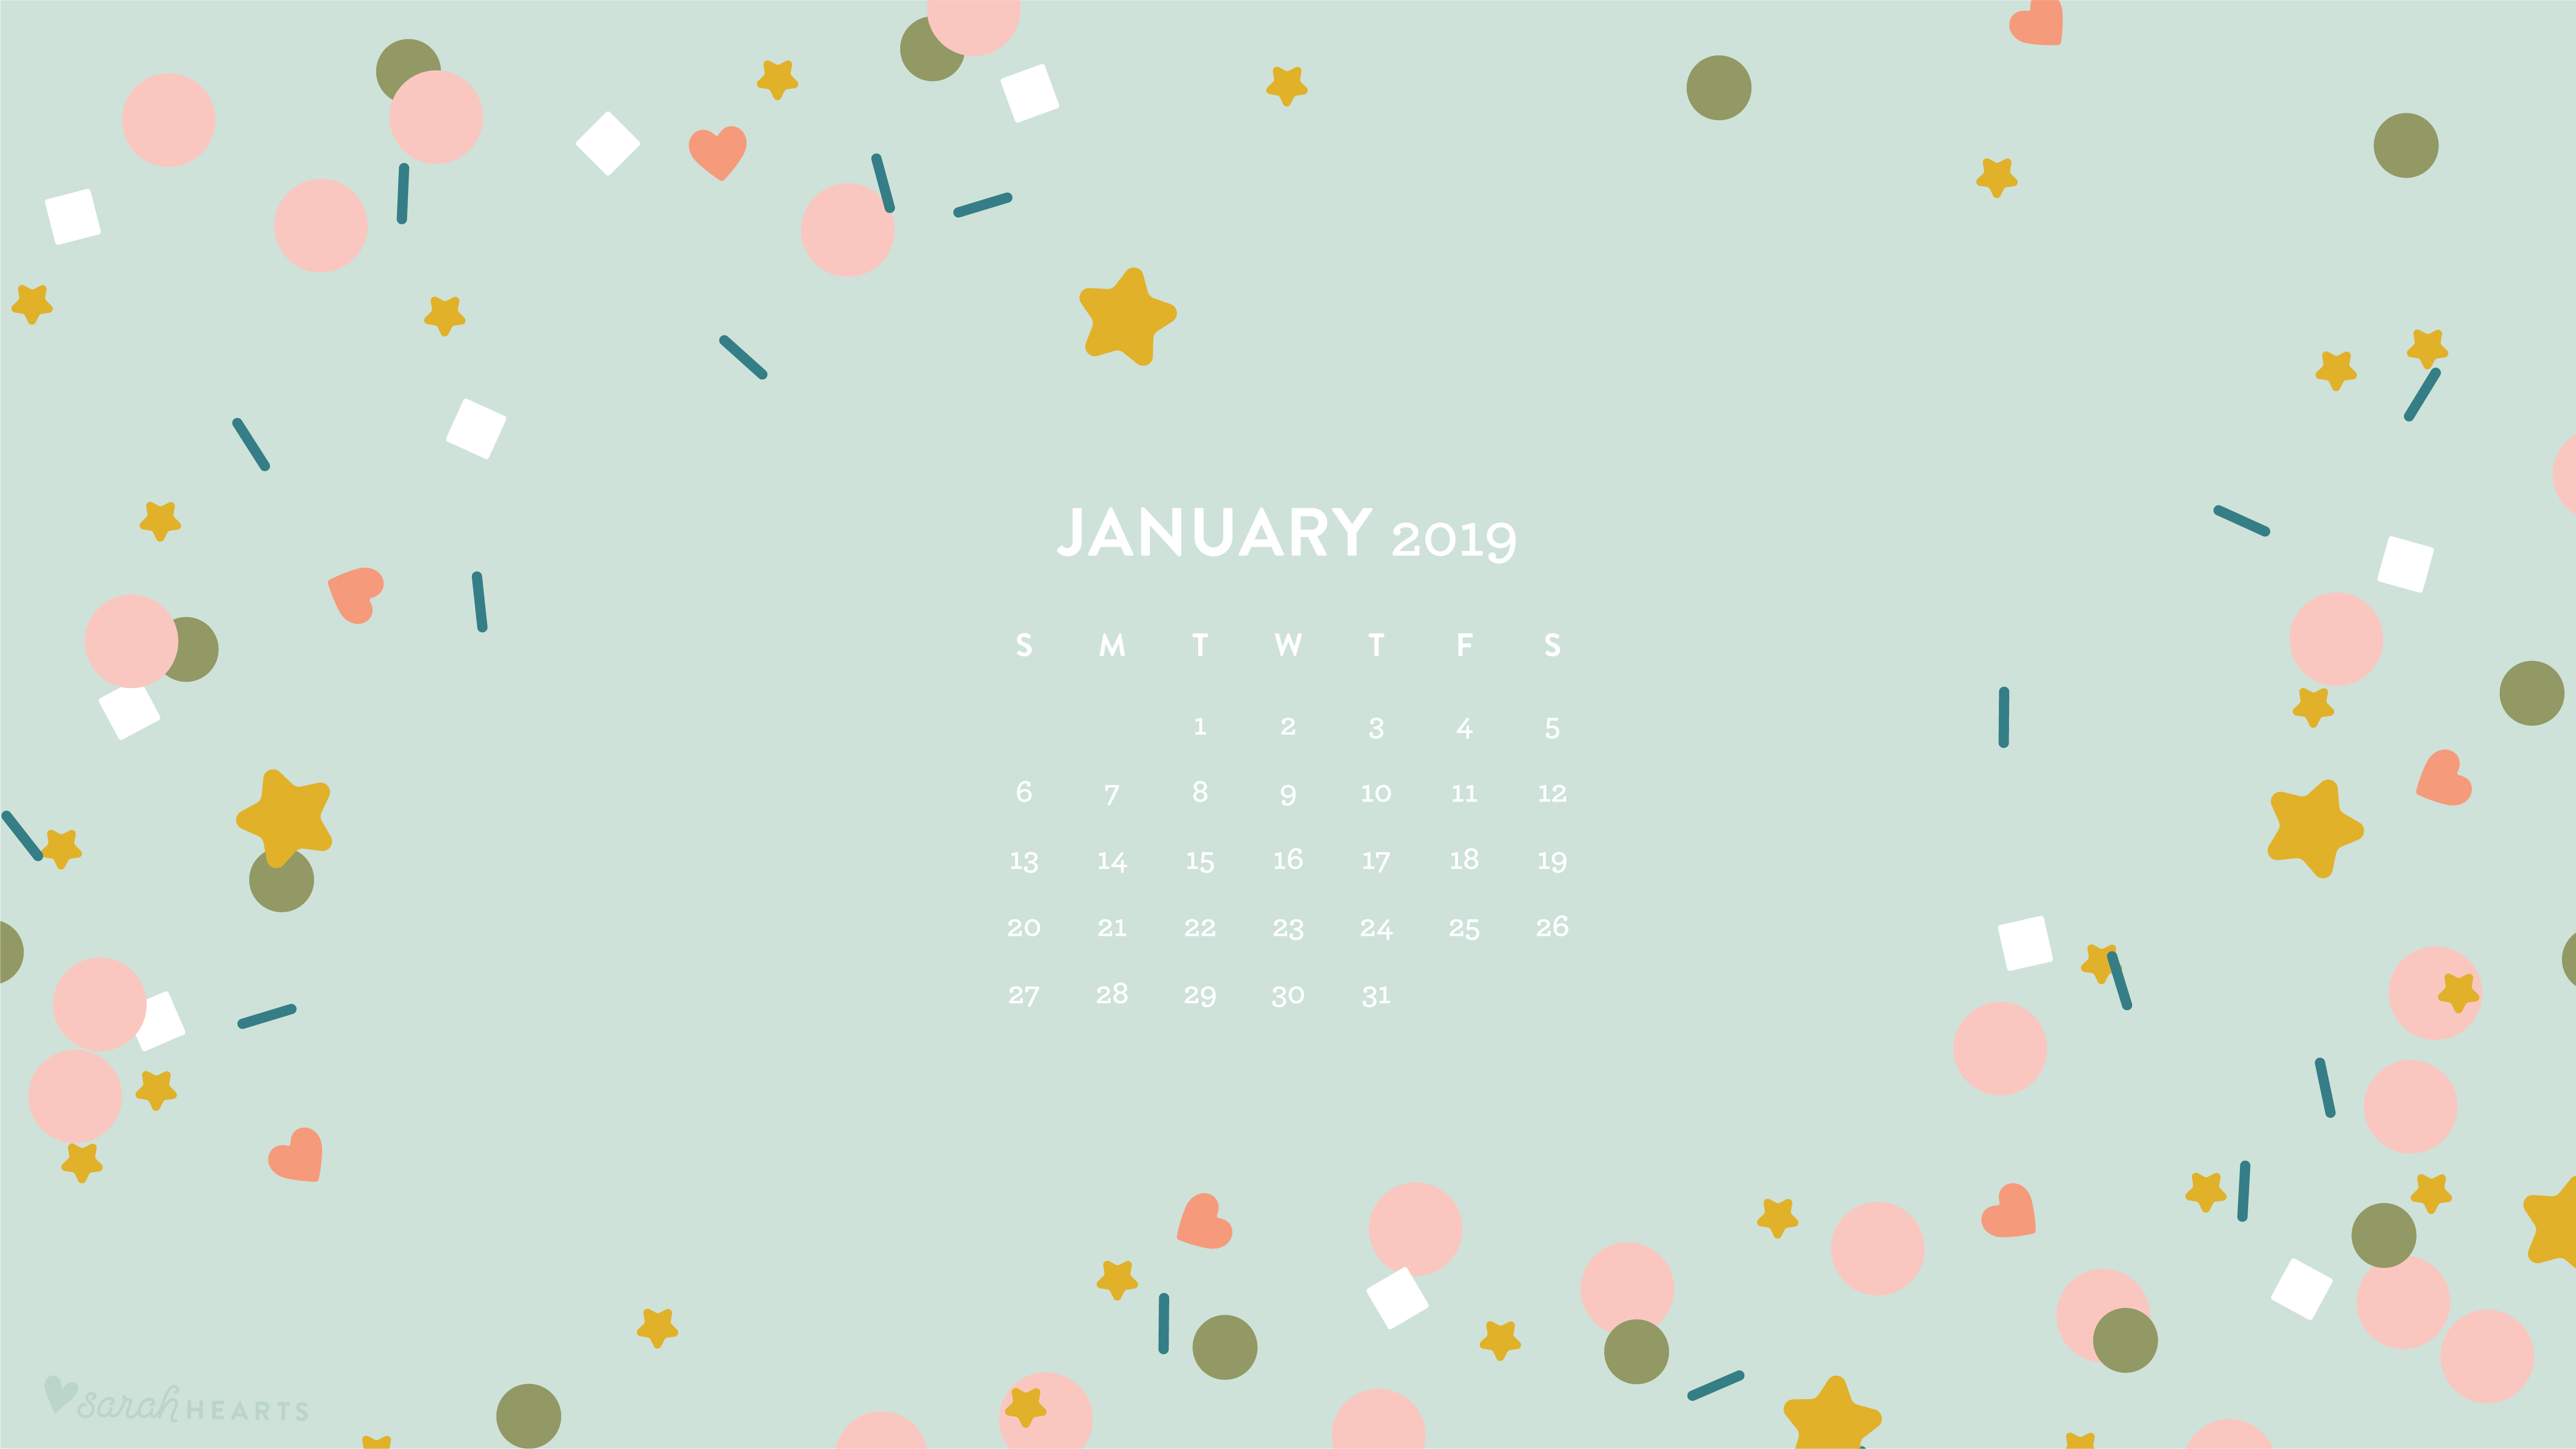 January 2019 Confetti Calendar Wallpaper - Sarah Hearts